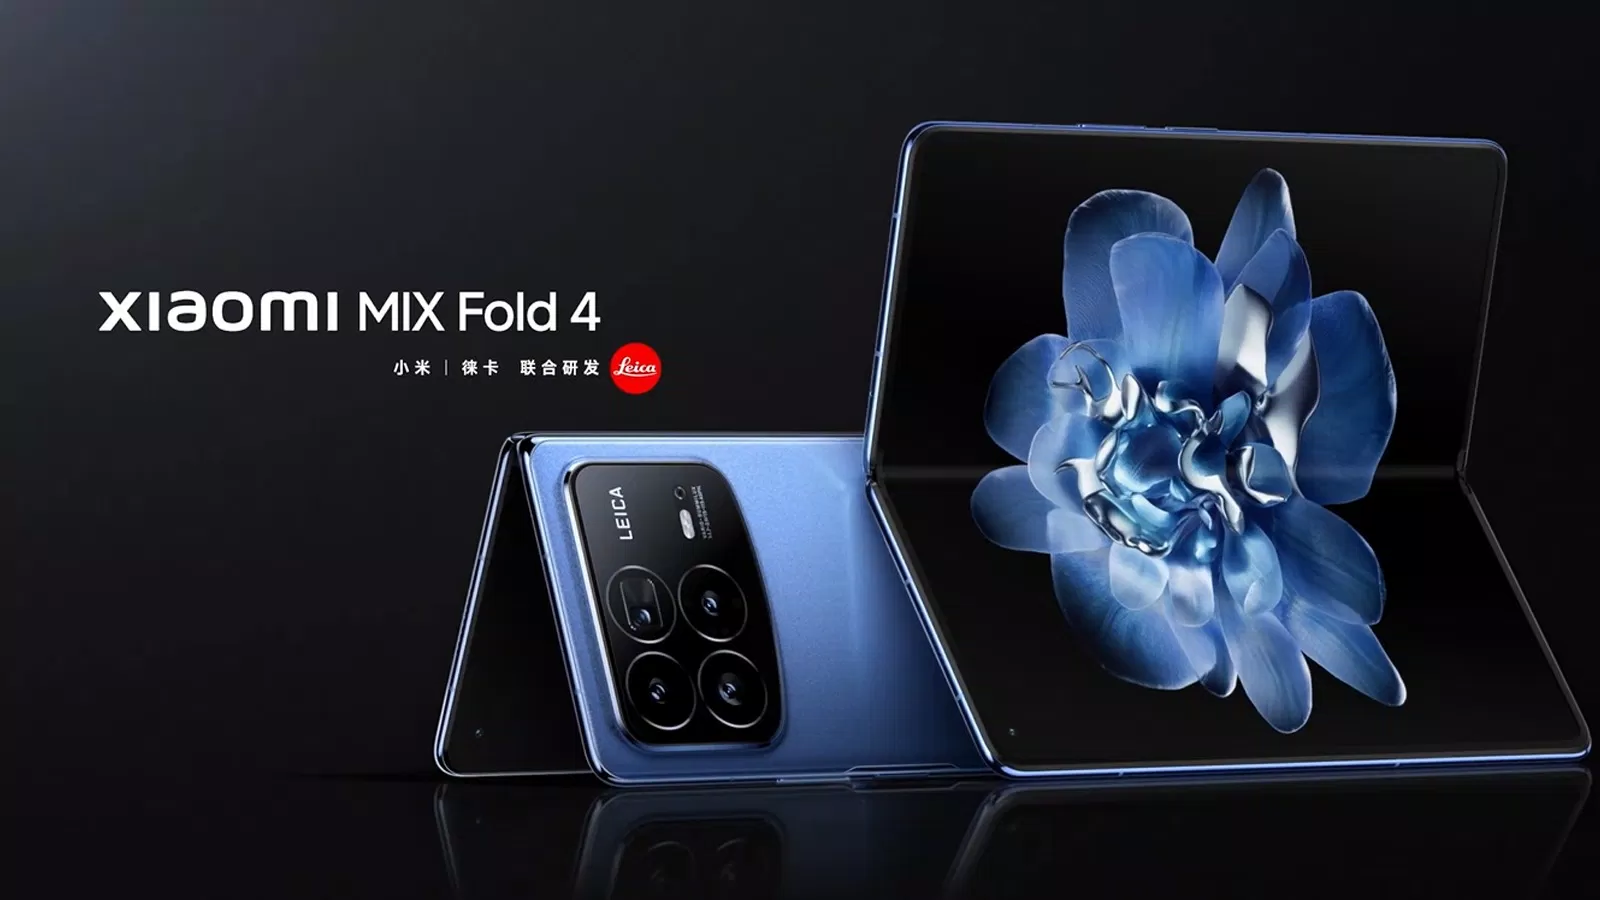 Xiaomi chính thức xác nhận MIX Fold 4 sẽ được trang bị chipset Snapdragon 8 Gen 3 mạnh mẽ, hứa hẹn mang đến hiệu năng đỉnh cao cho người dùng (Ảnh: Internet)